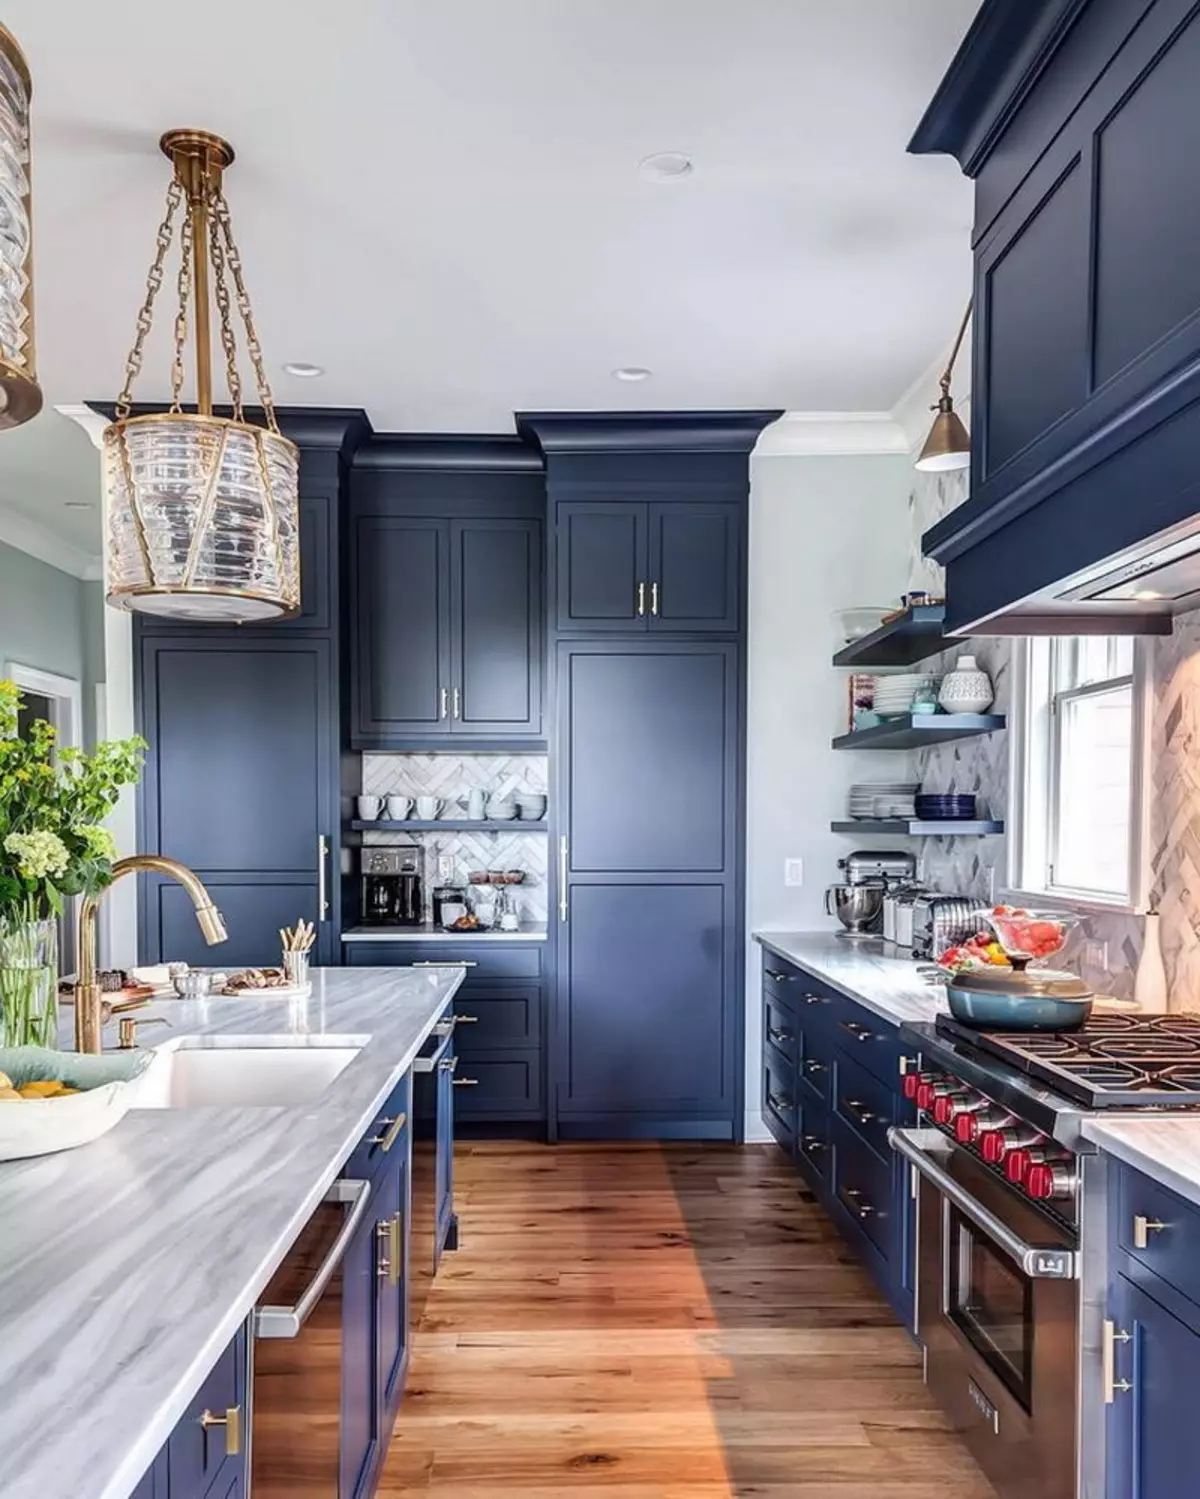 Cucina bianca-blu (64 foto): Caratteristiche dell'auricolare della cucina in colore bianco-blu per la cucina Interior design, accenti sulle pareti in colori simili 9393_30